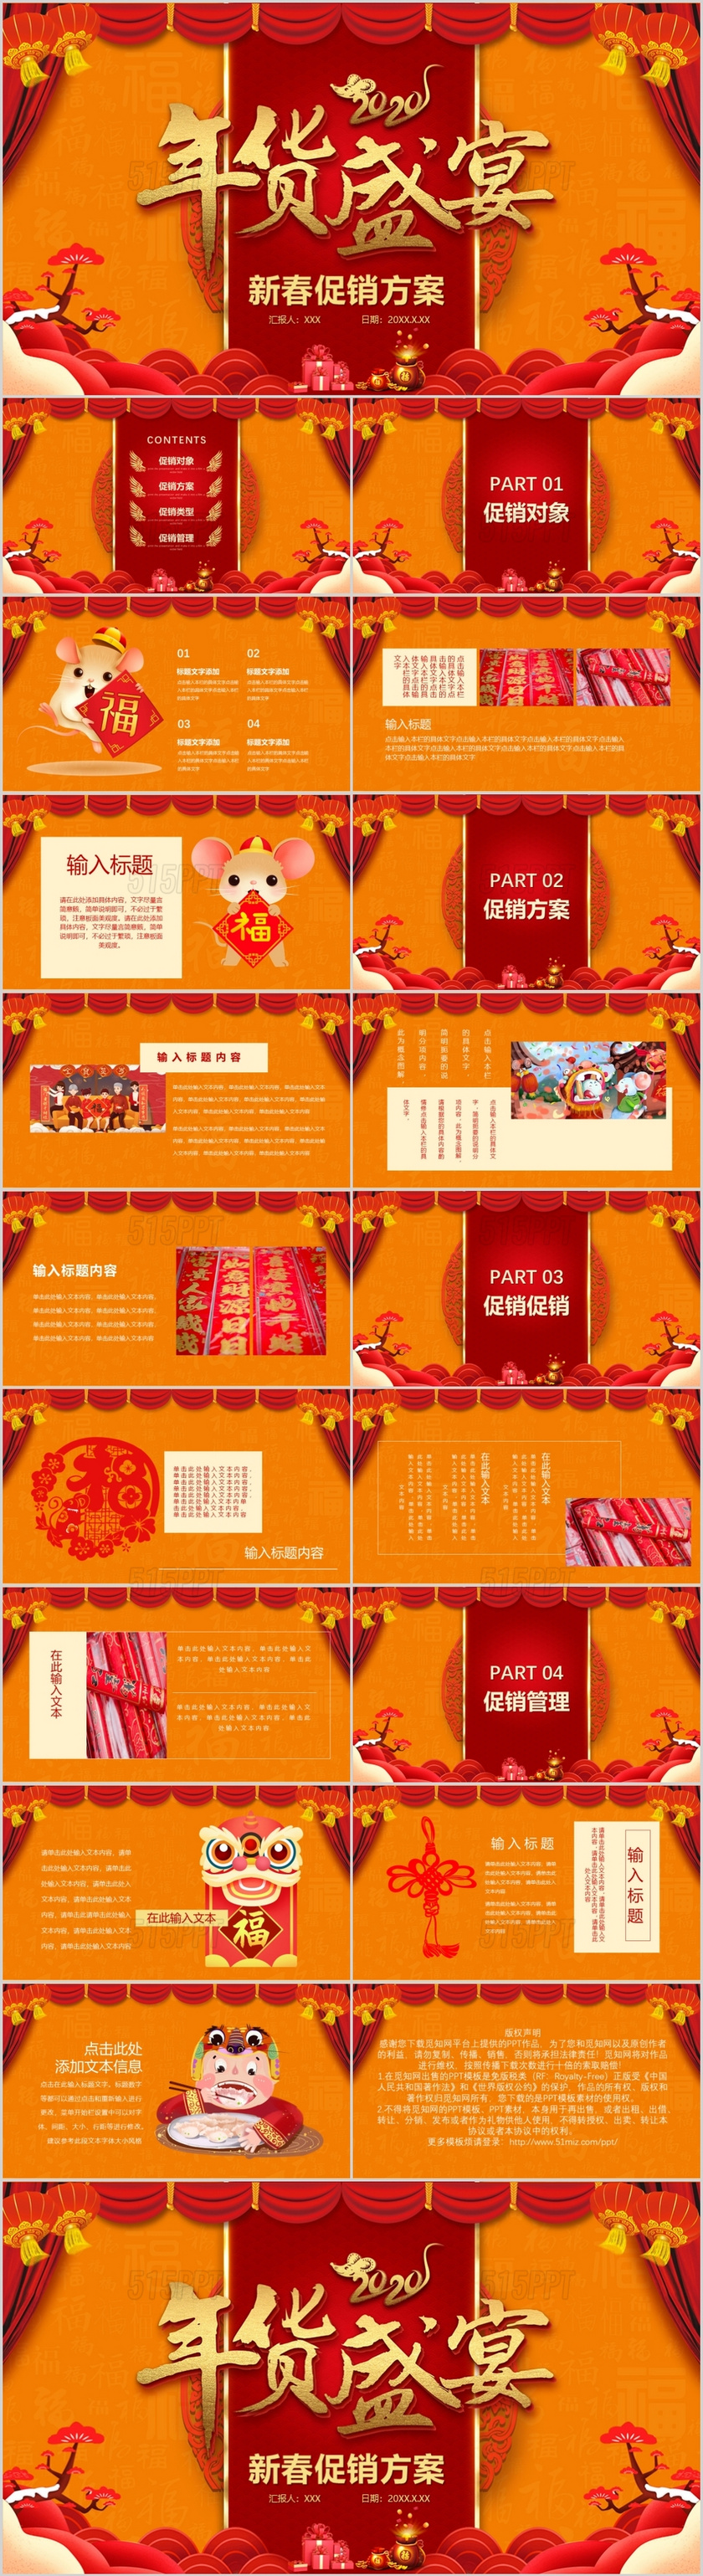 橙色新春促销方案PPT模板宣传PPT动态PPT年货节